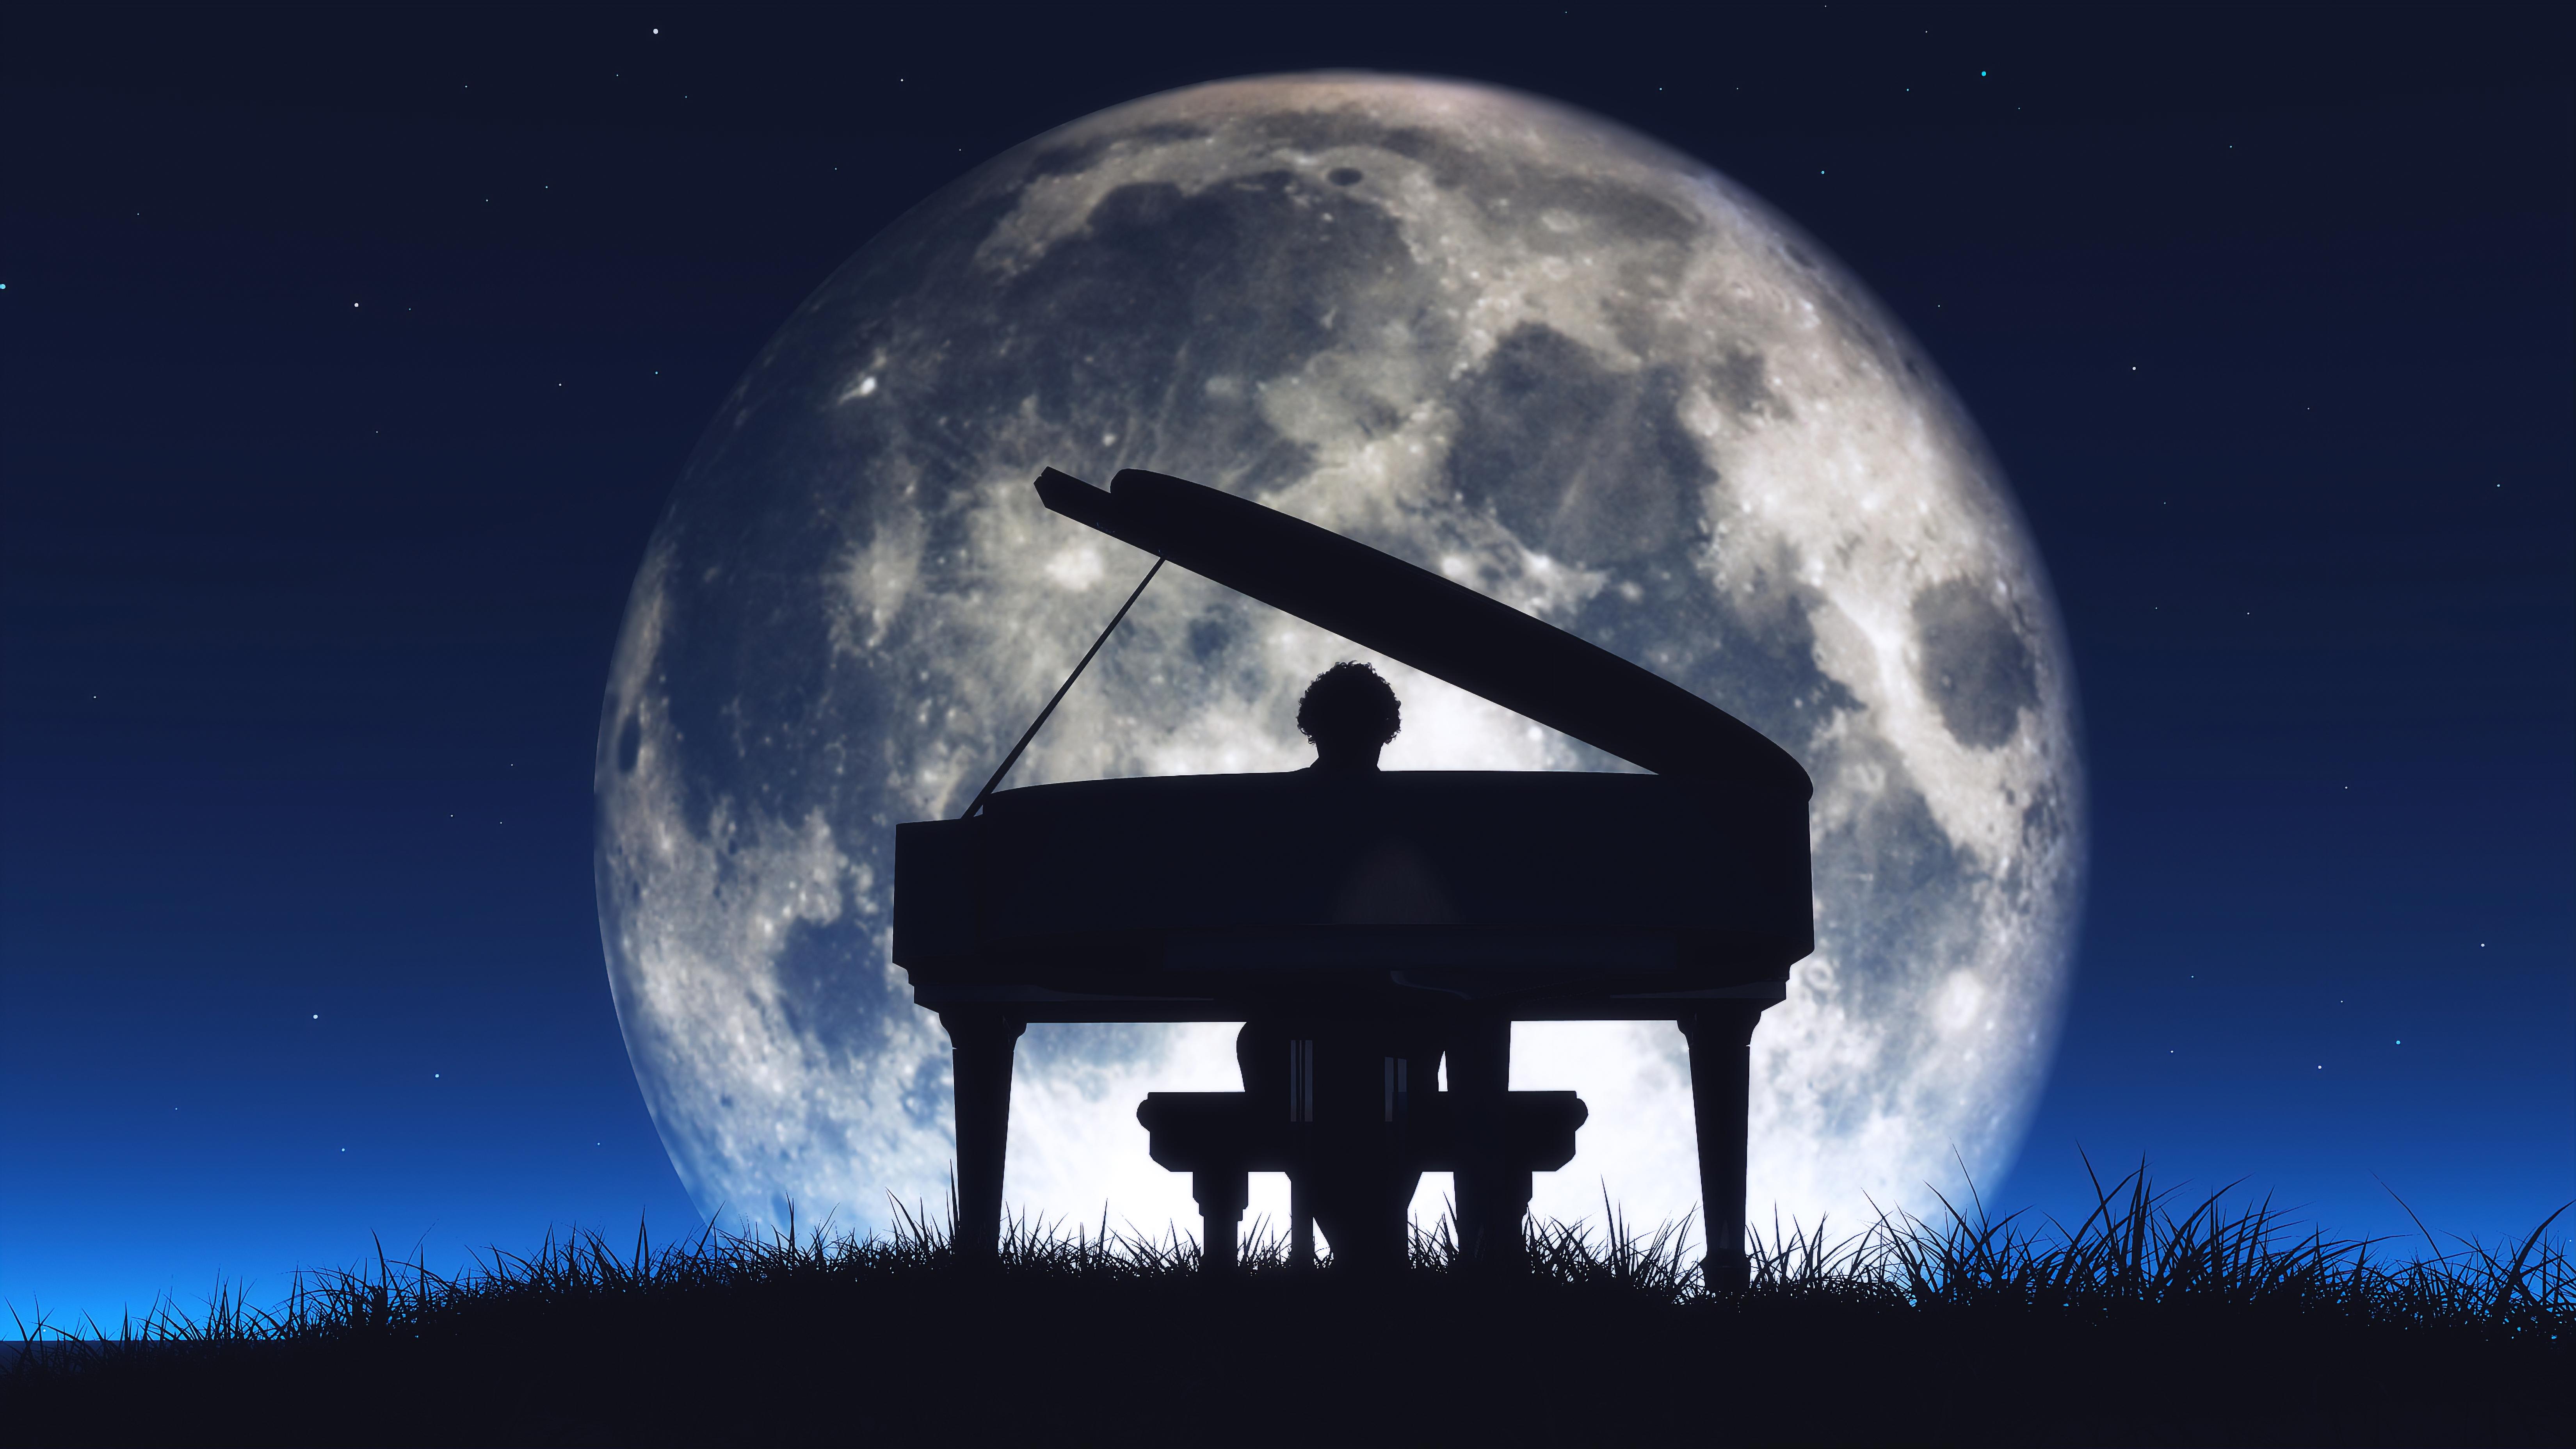 Рингтон песни луна. Композиции Бетховена Лунная Соната. Рисунок к лунной сонате Бетховена. Иллюстрации к "лунной сонате" л.Бетховена.. Рояль на фоне Луны.